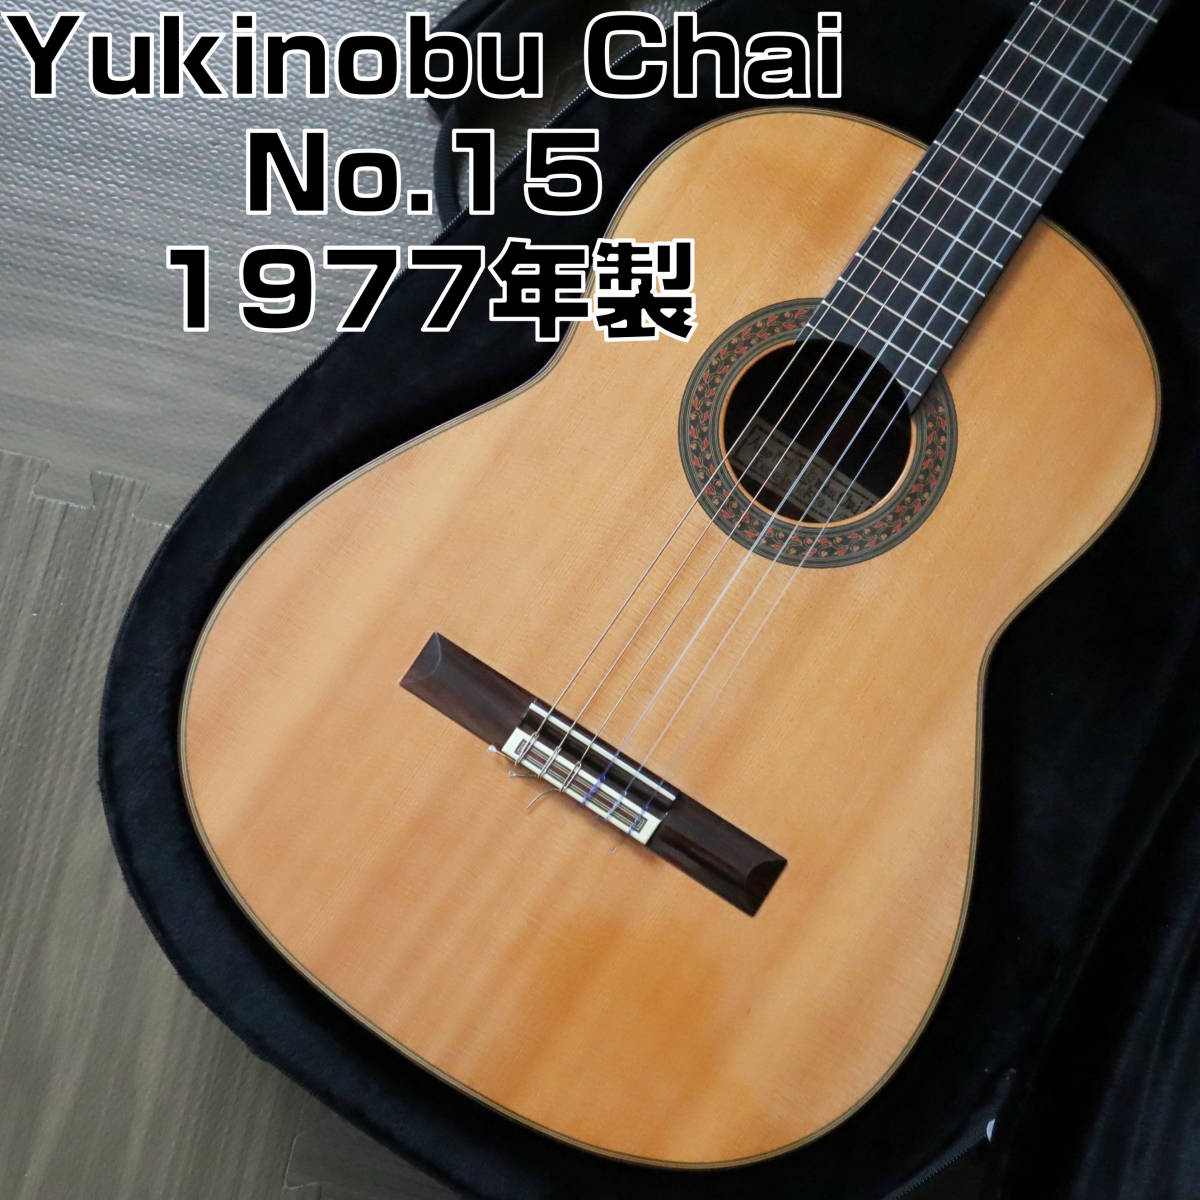 【極美品】茶位幸信 No.15 Yukinobu Chai 1977年製 クラシックギター オール単板エボニー